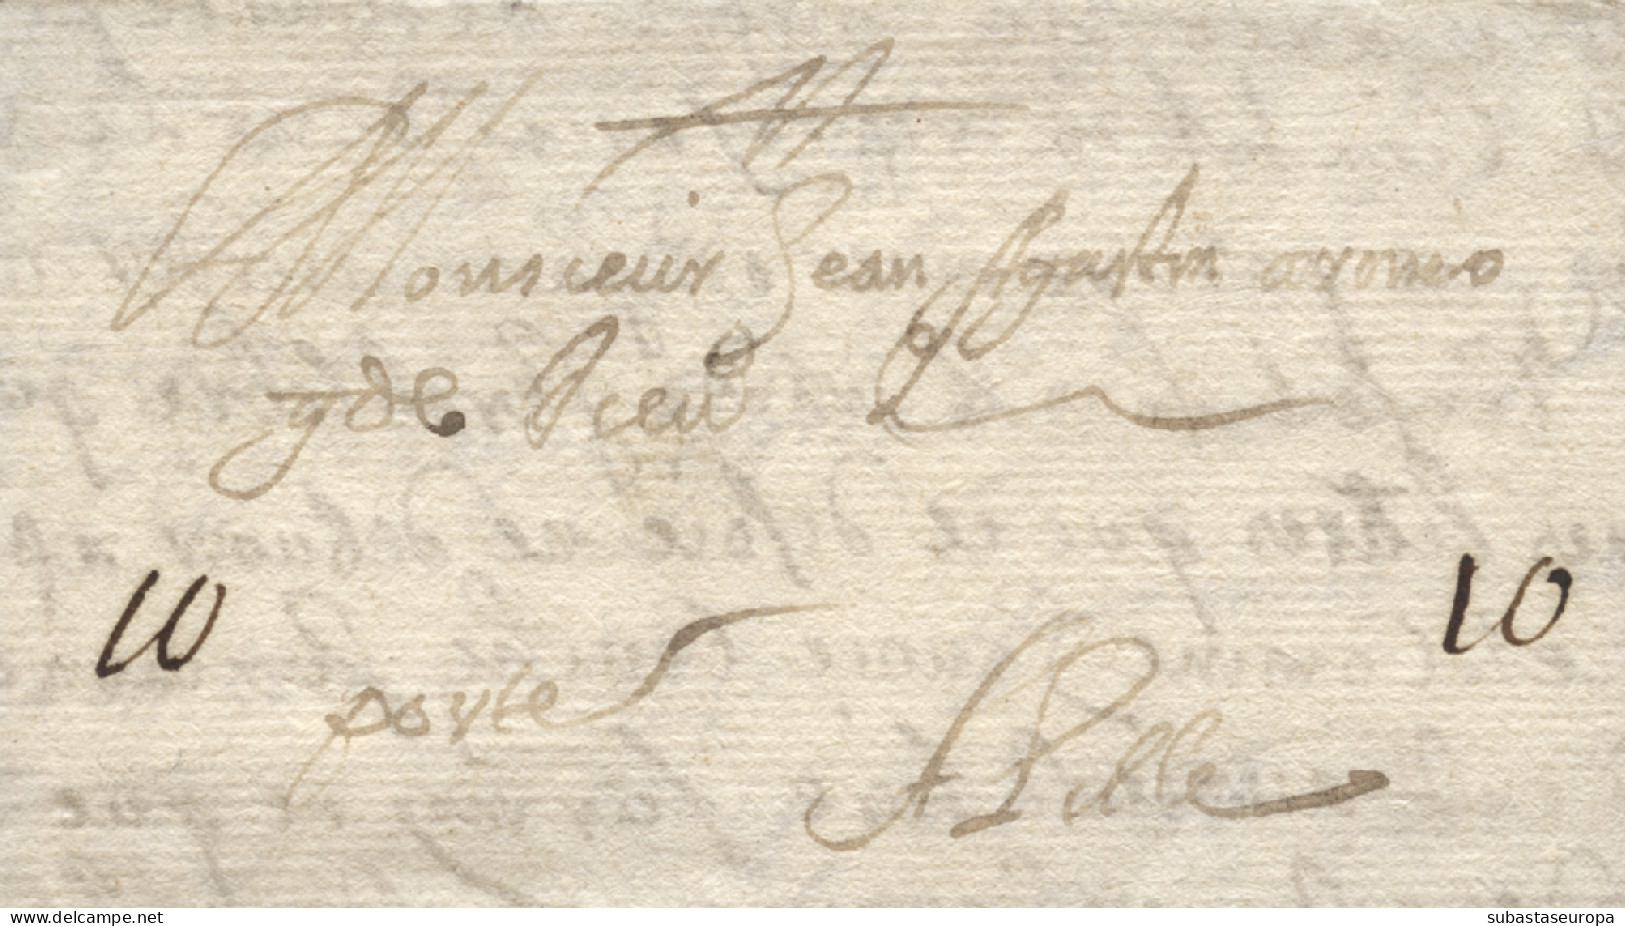 D.P. 1. 1690 (27 DIC). Carta De Madrid A Lille (Francia). Rarísima Pieza Del Siglo XVI. - ...-1850 Préphilatélie